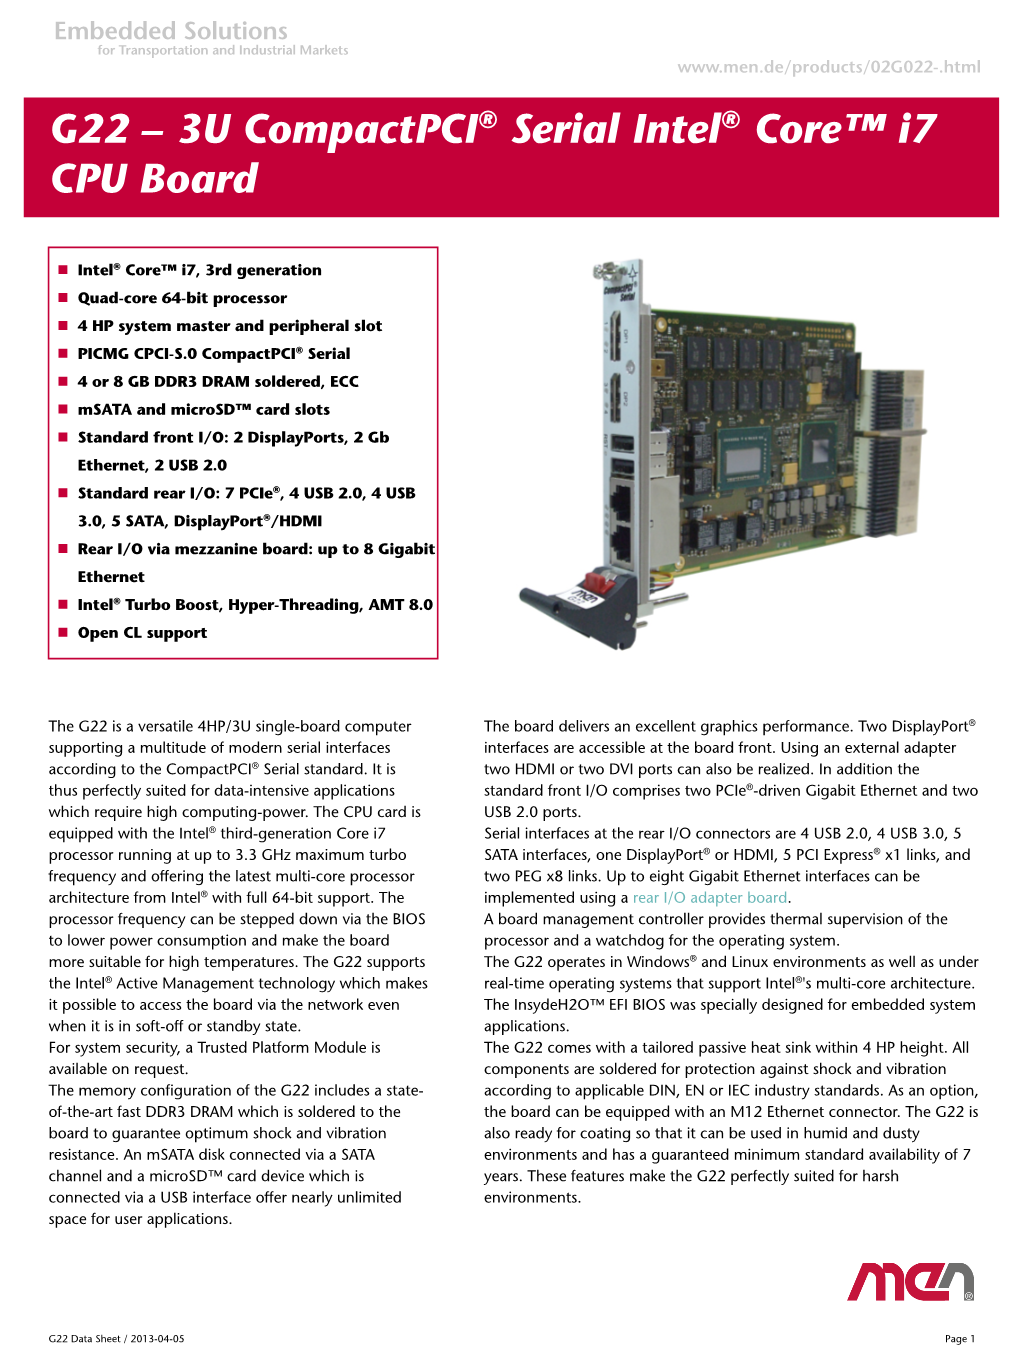 3U Compactpci® Serial Intel® Core™ I7 CPU Board